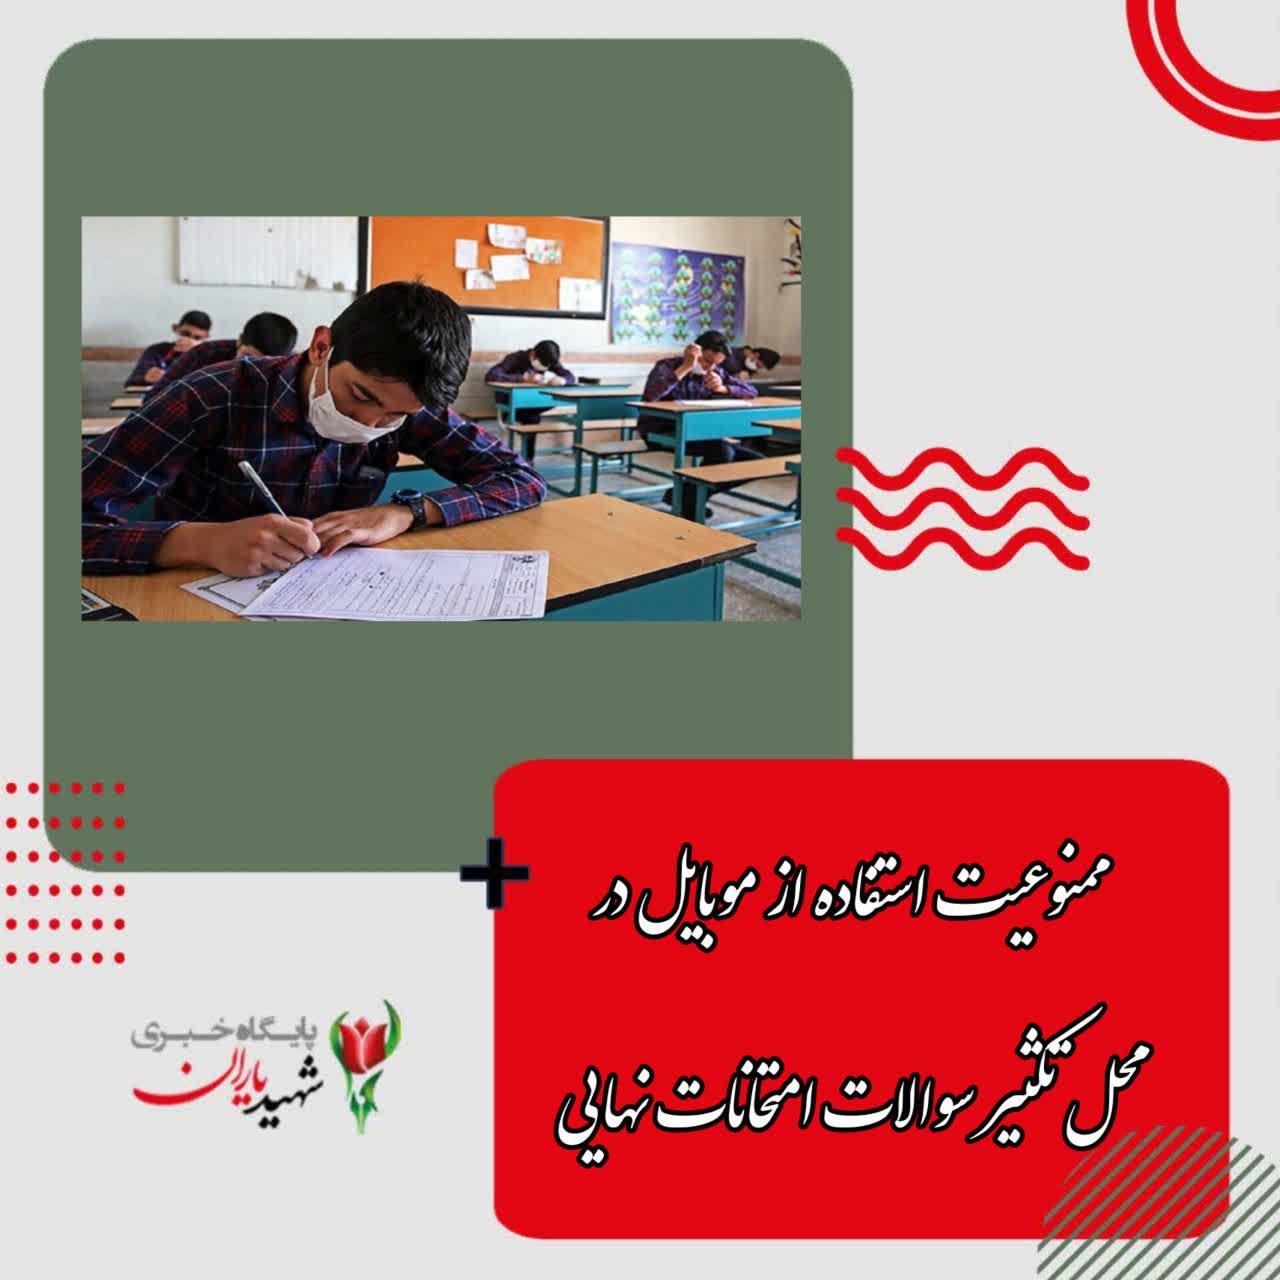 رئیس مرکز ارزشیابی و تضمین کیفت نظام آموزش و پرورش خبر داد: